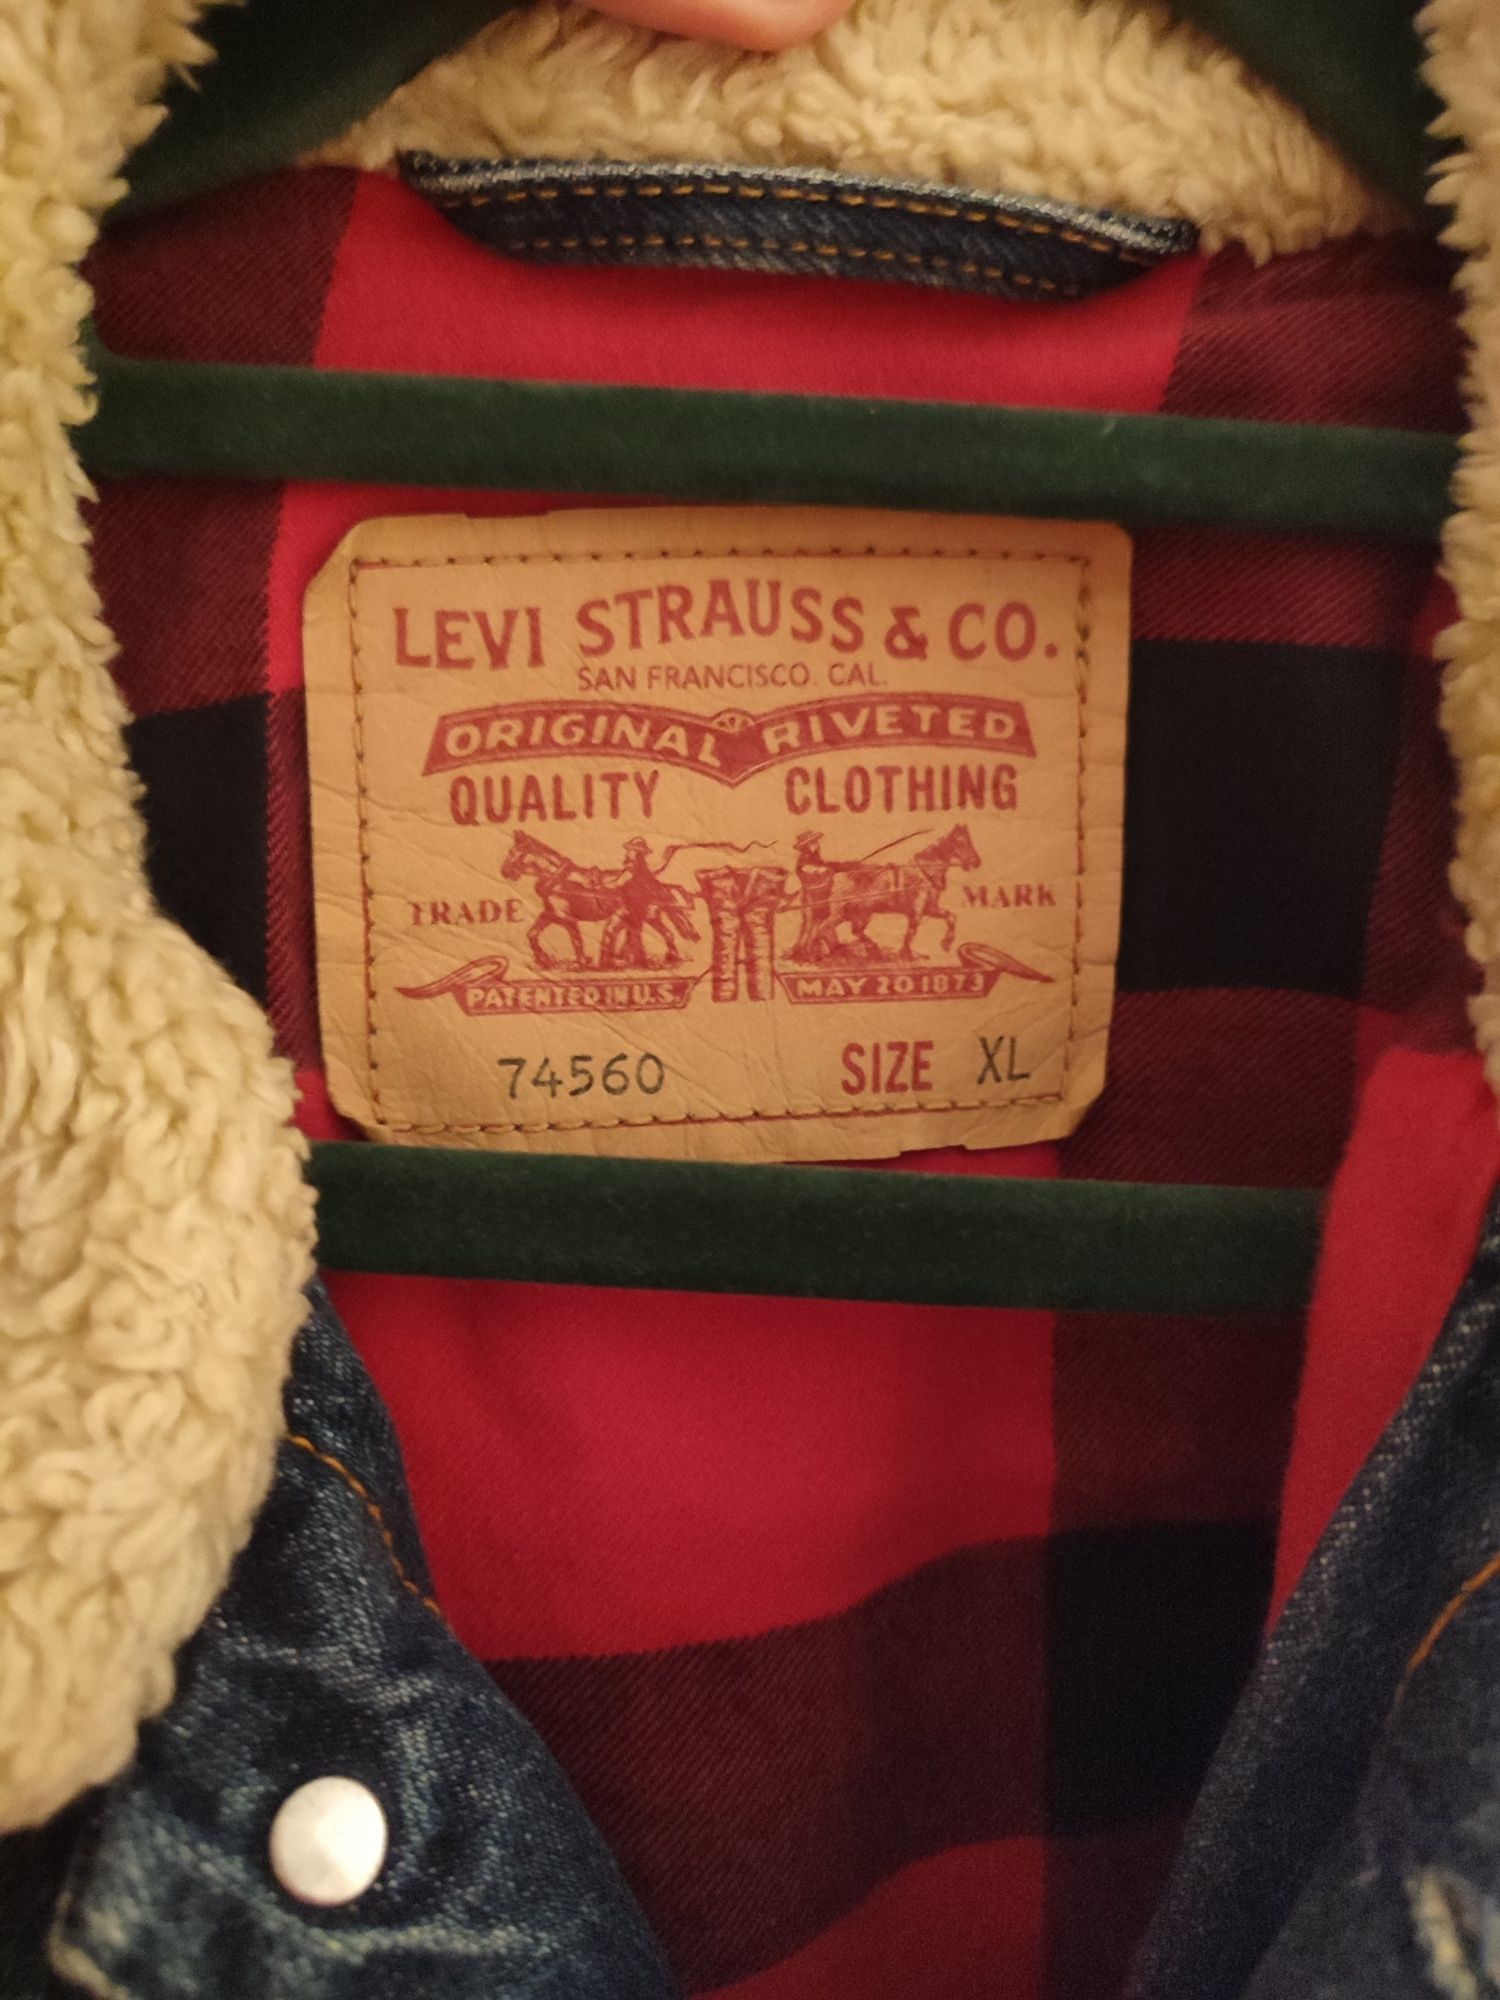 Kurtka jeansowa/ dżinsowa Levi's Strauss 74560, ocieplana z kożuszkiem